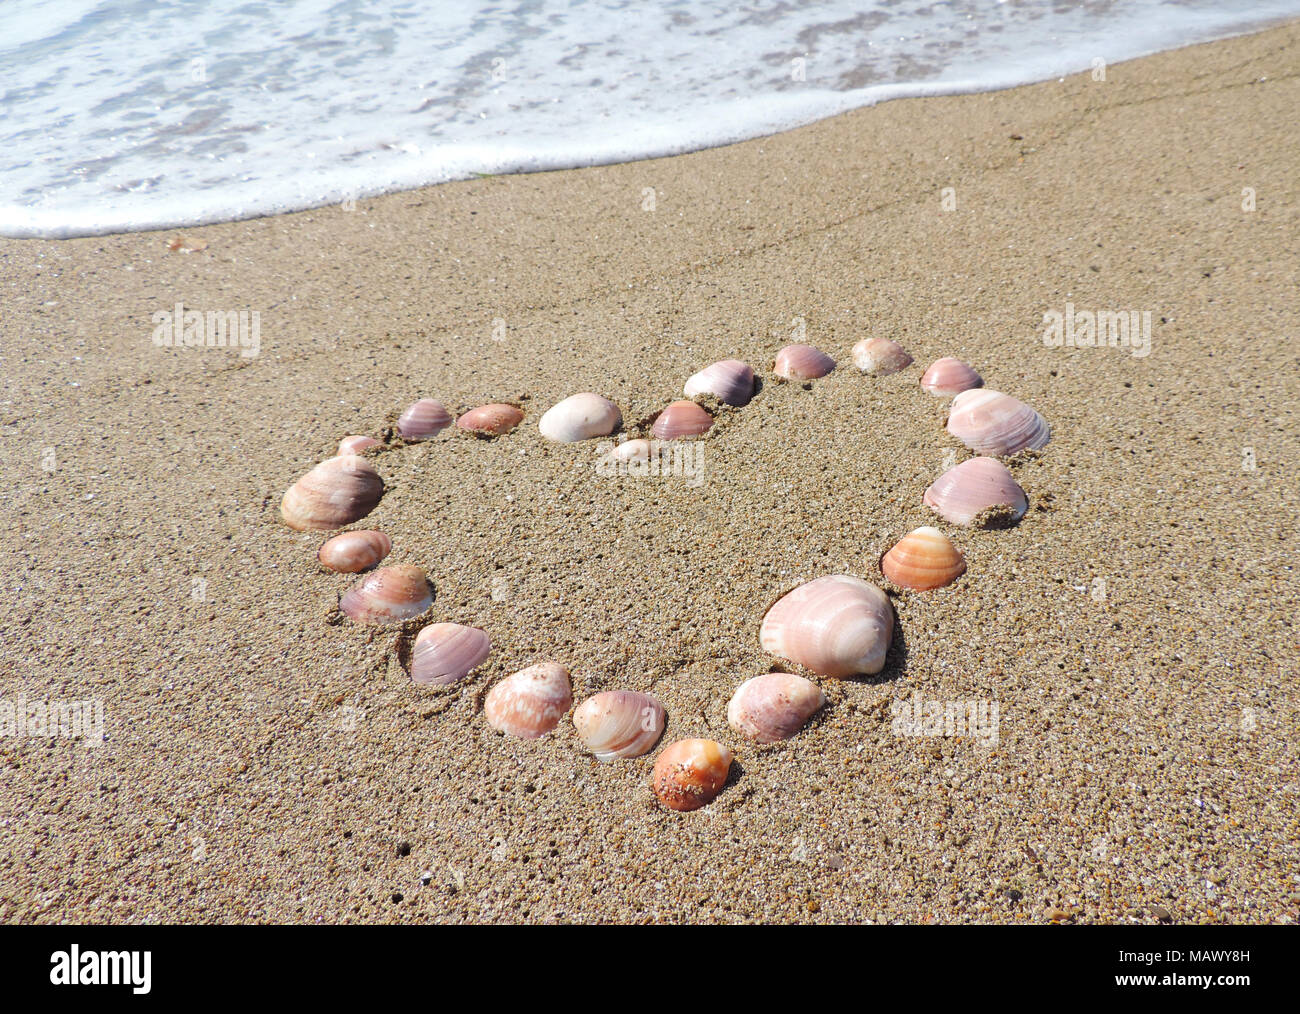 Herzen von Muscheln am Strand. Sommer Liebe oder Romanze Thema mit Sand und Muscheln. Stockfoto